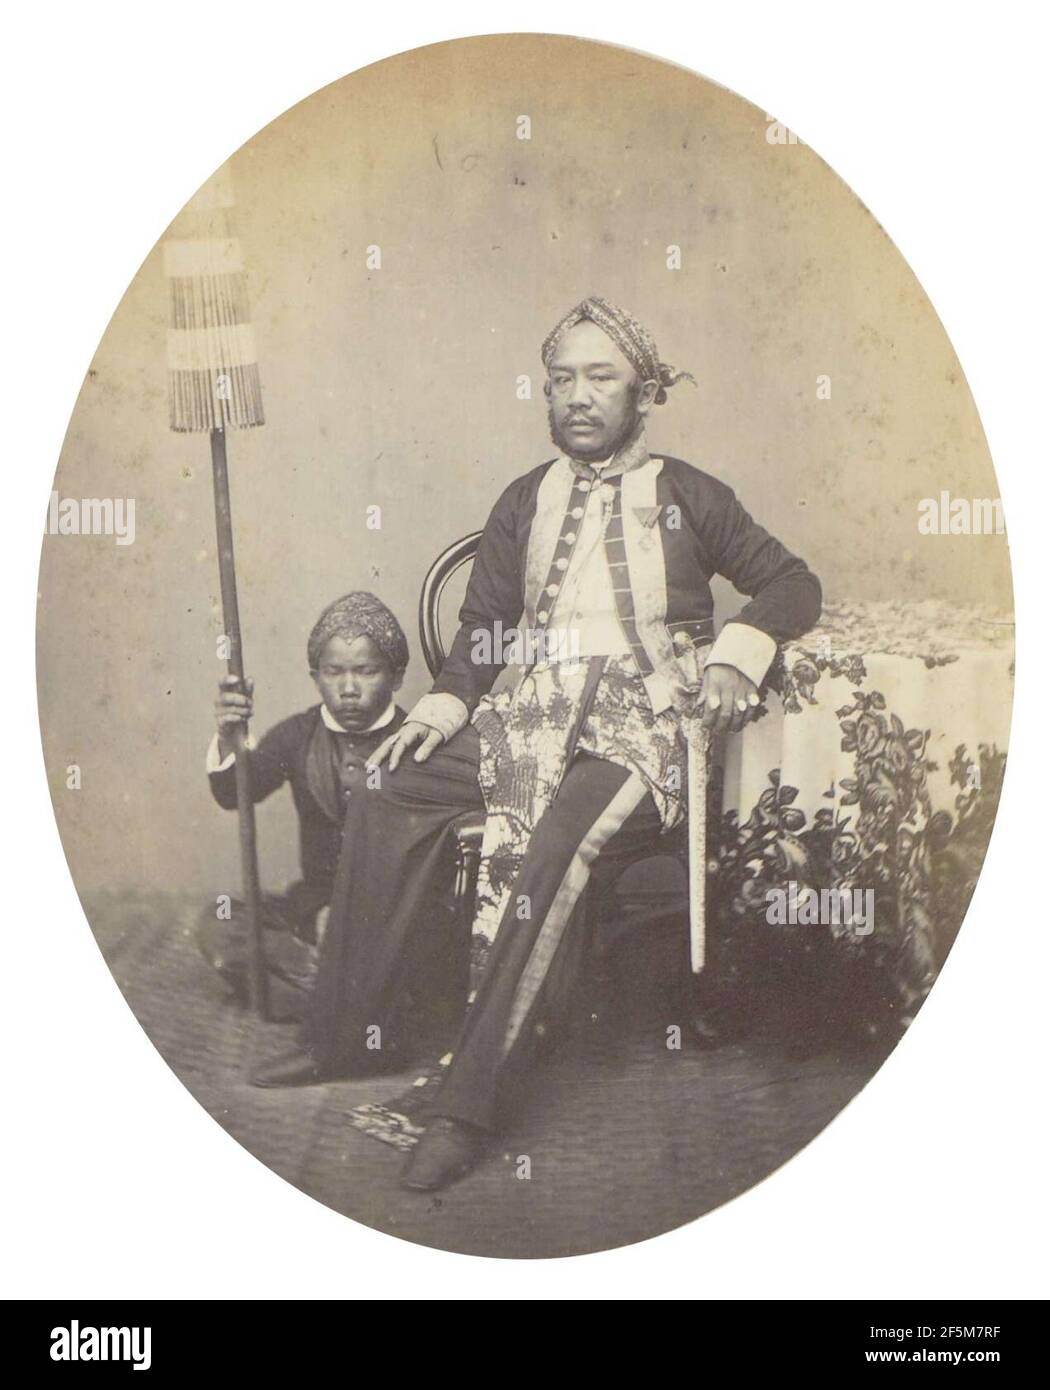 Regent of Bandung (1860s-1870s). Stock Photo